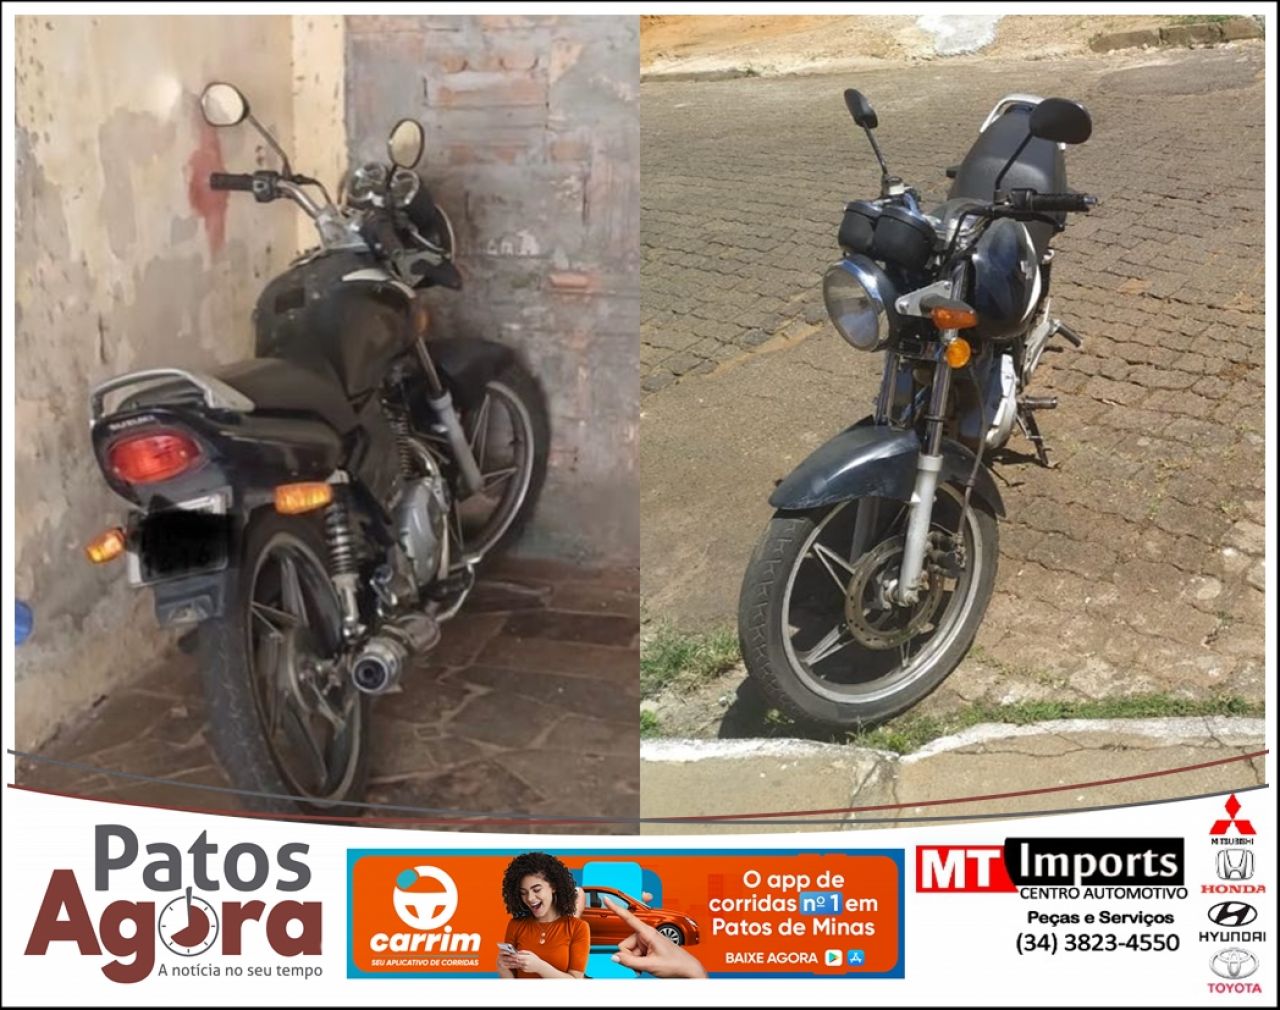 Motocicleta penhorada em ponto de tráfico é recuperada pela Polícia Civil em Patos de Minas